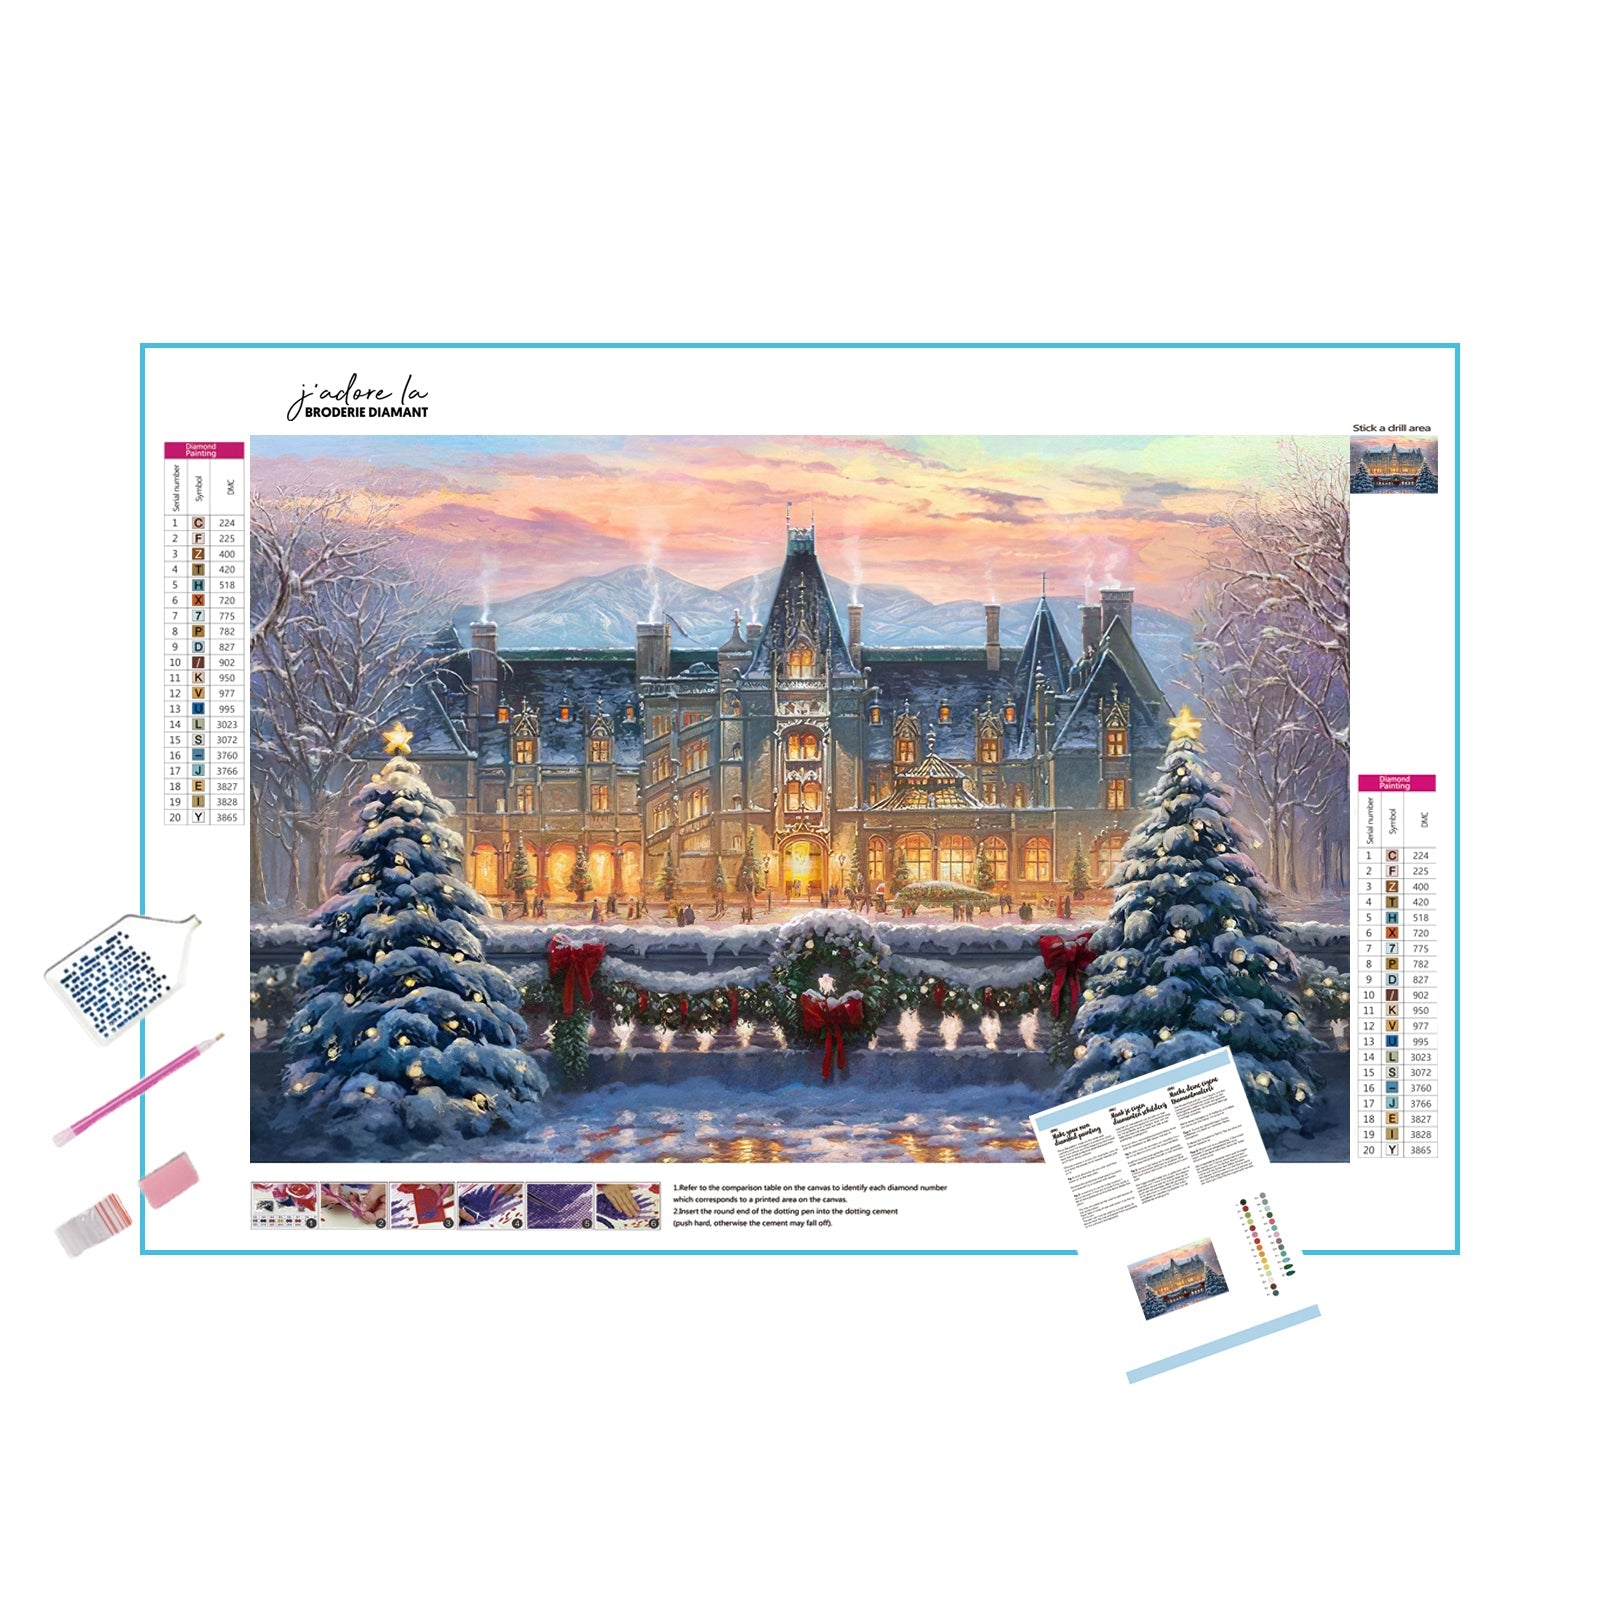 Una pintura de diamantes llamado 'Hermoso Árbol Navidad Casa Invierno Nieve' - Meencantalapinturadediamantes